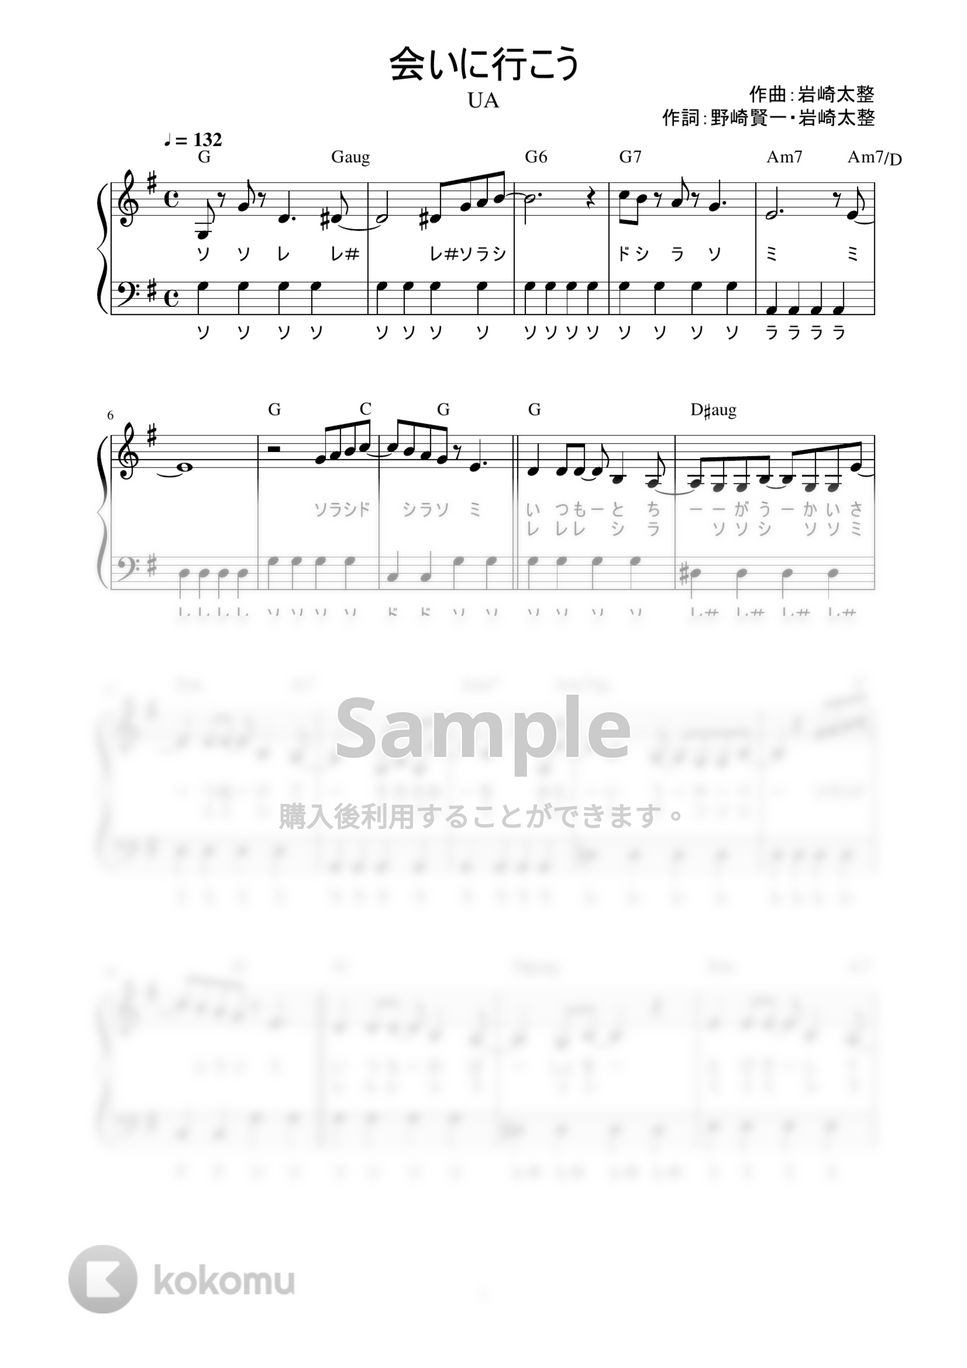 UA - 会いに行こう (かんたん / 歌詞付き / ドレミ付き / 初心者) by piano.tokyo